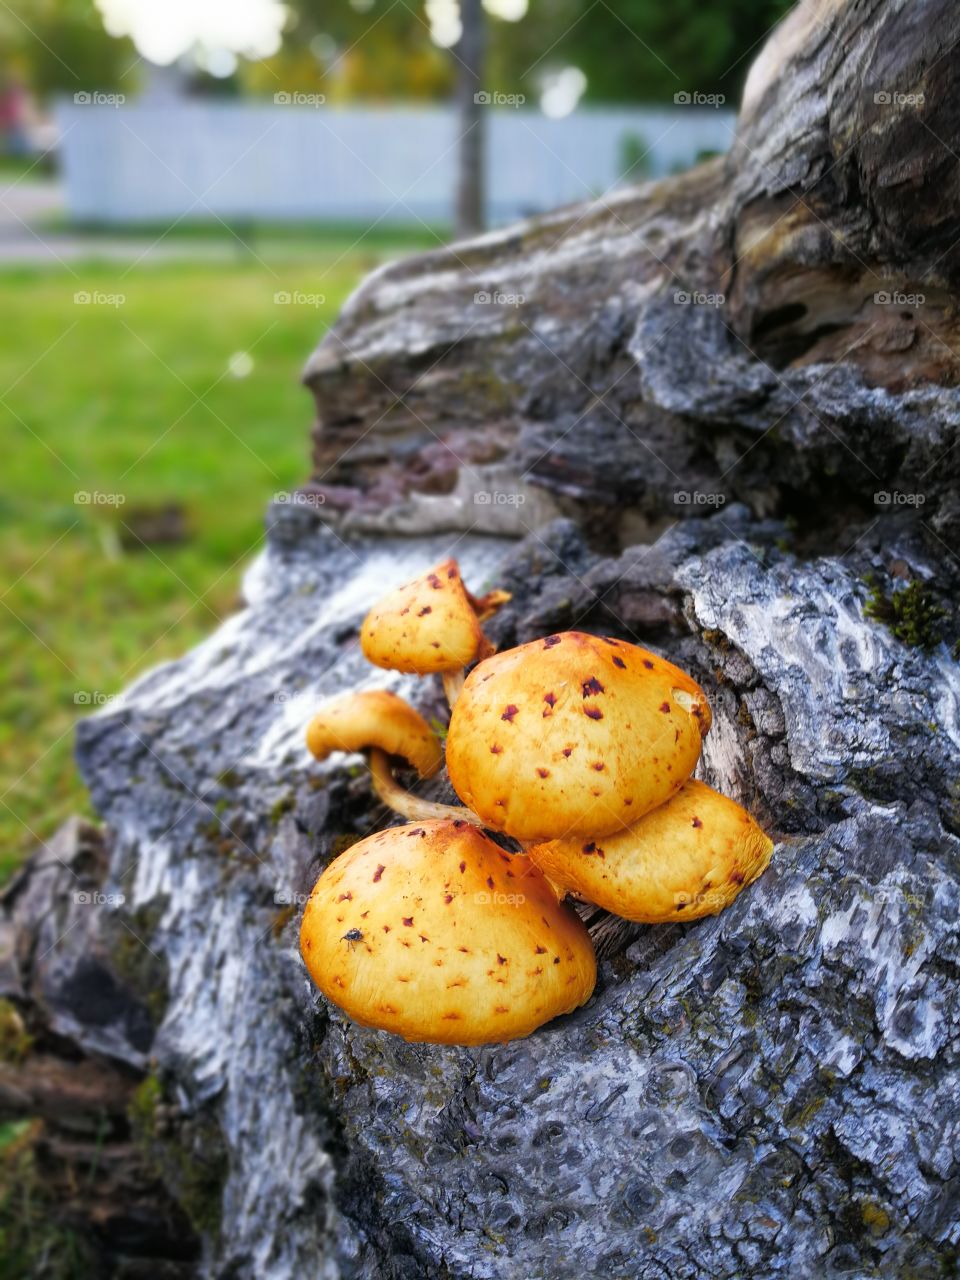 🍄 Mushrooms